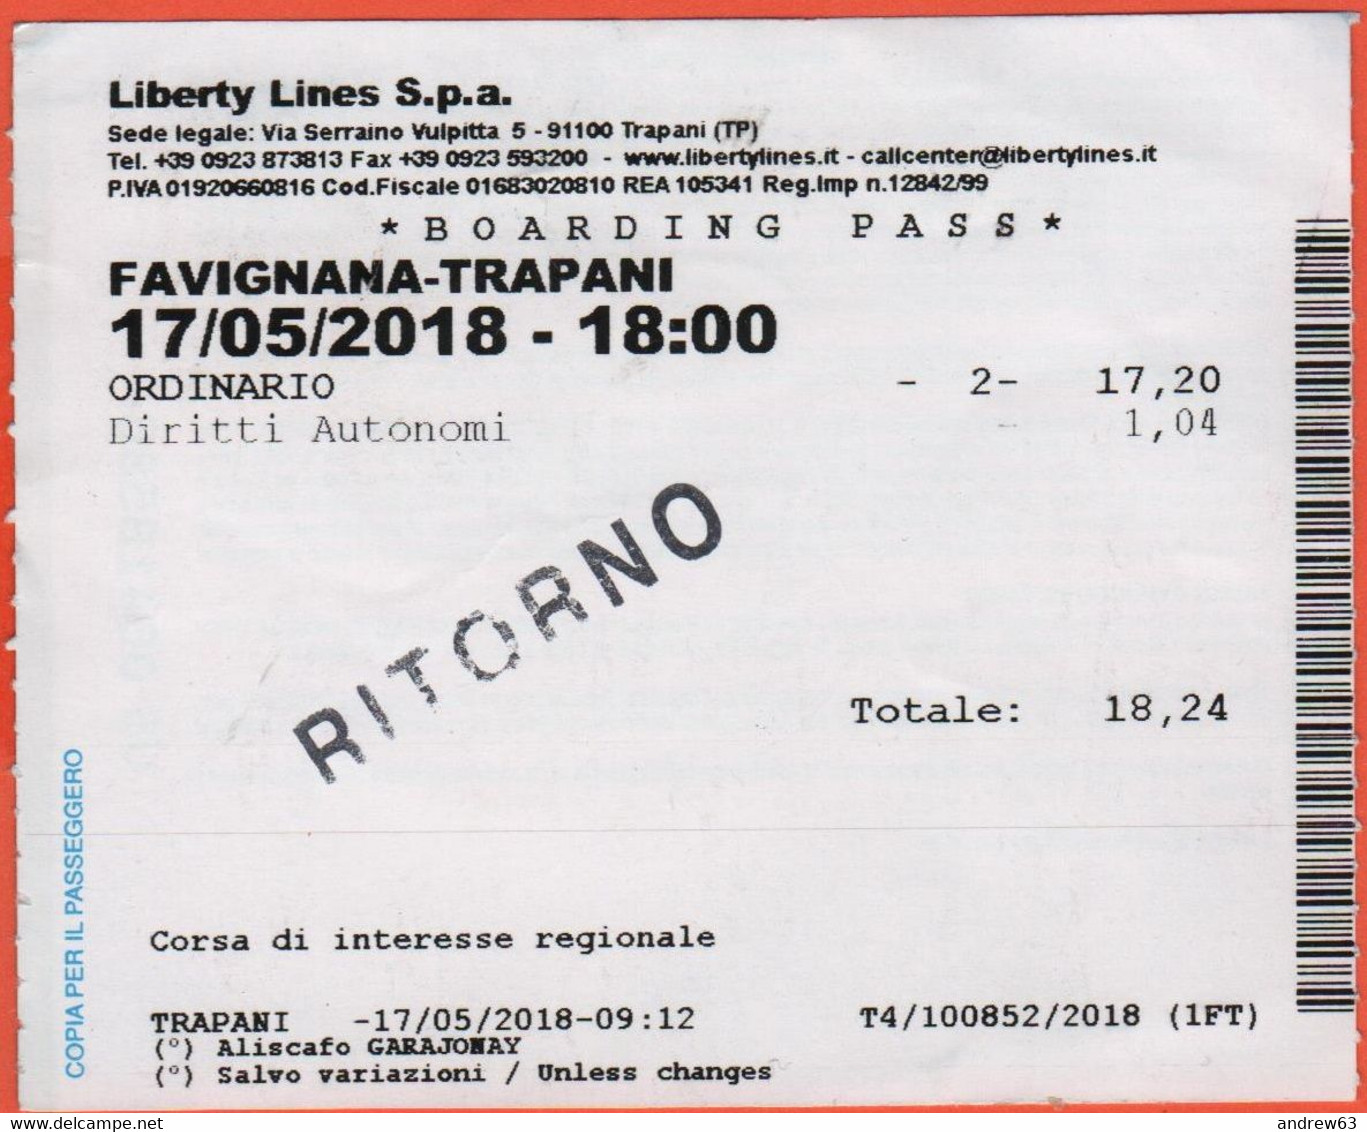 LIBERTY LINES SPA - FAVIGNANA-TRAPANI - Aliscafo Garajonay - Boarding Pass - Biglietto Per Corsa Semplice - Usato - Europa